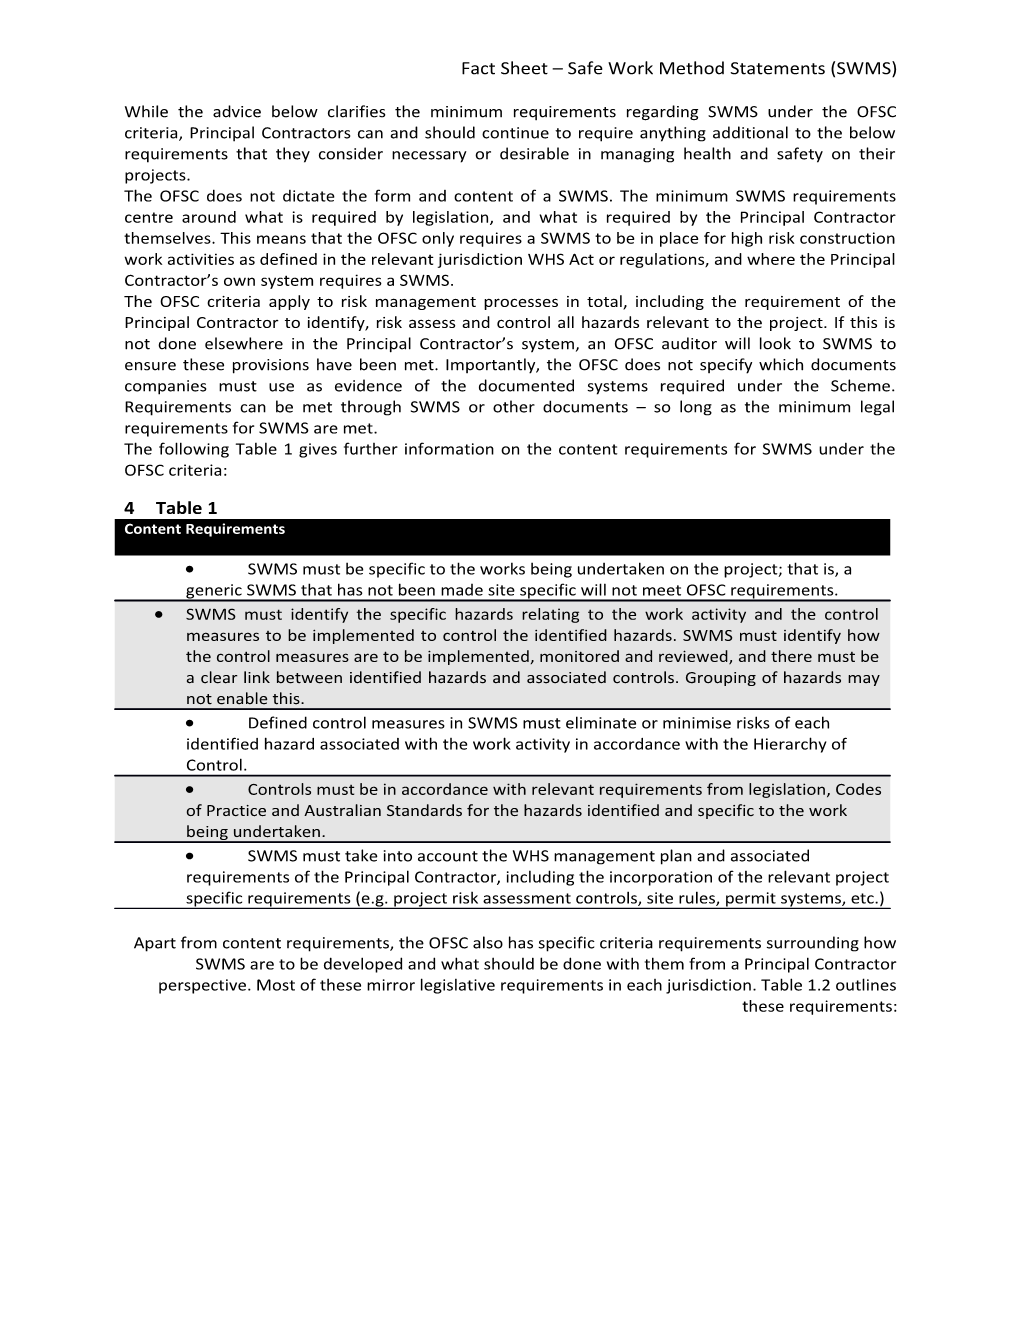 Fact Sheet Safe Work Method Statements (SWMS)